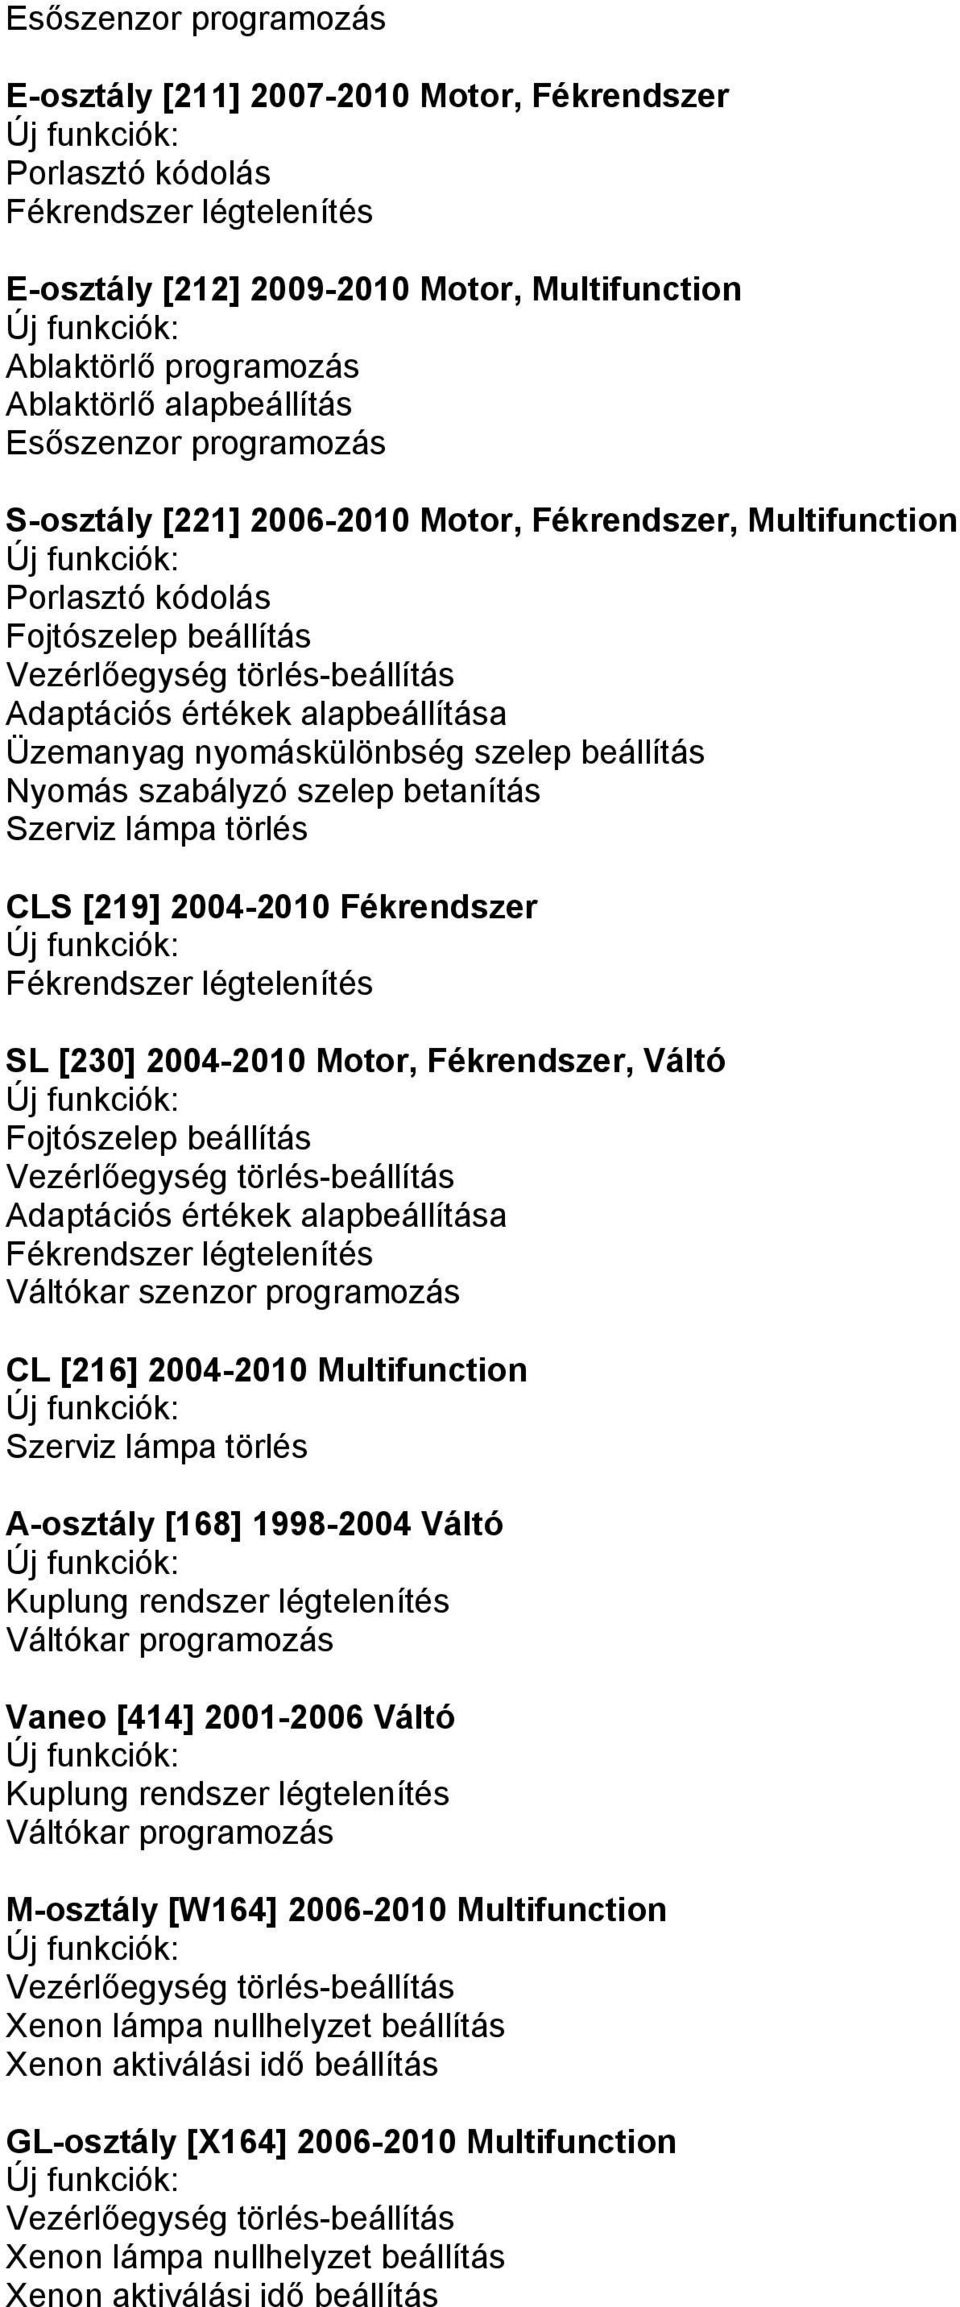 Fékrendszer SL [230] 2004-2010 Motor, Fékrendszer, Váltó Fojtószelep beállítás Vezérlőegység törlés-beállítás Váltókar szenzor programozás CL [216] 2004-2010 Multifunction A-osztály [168] 1998-2004